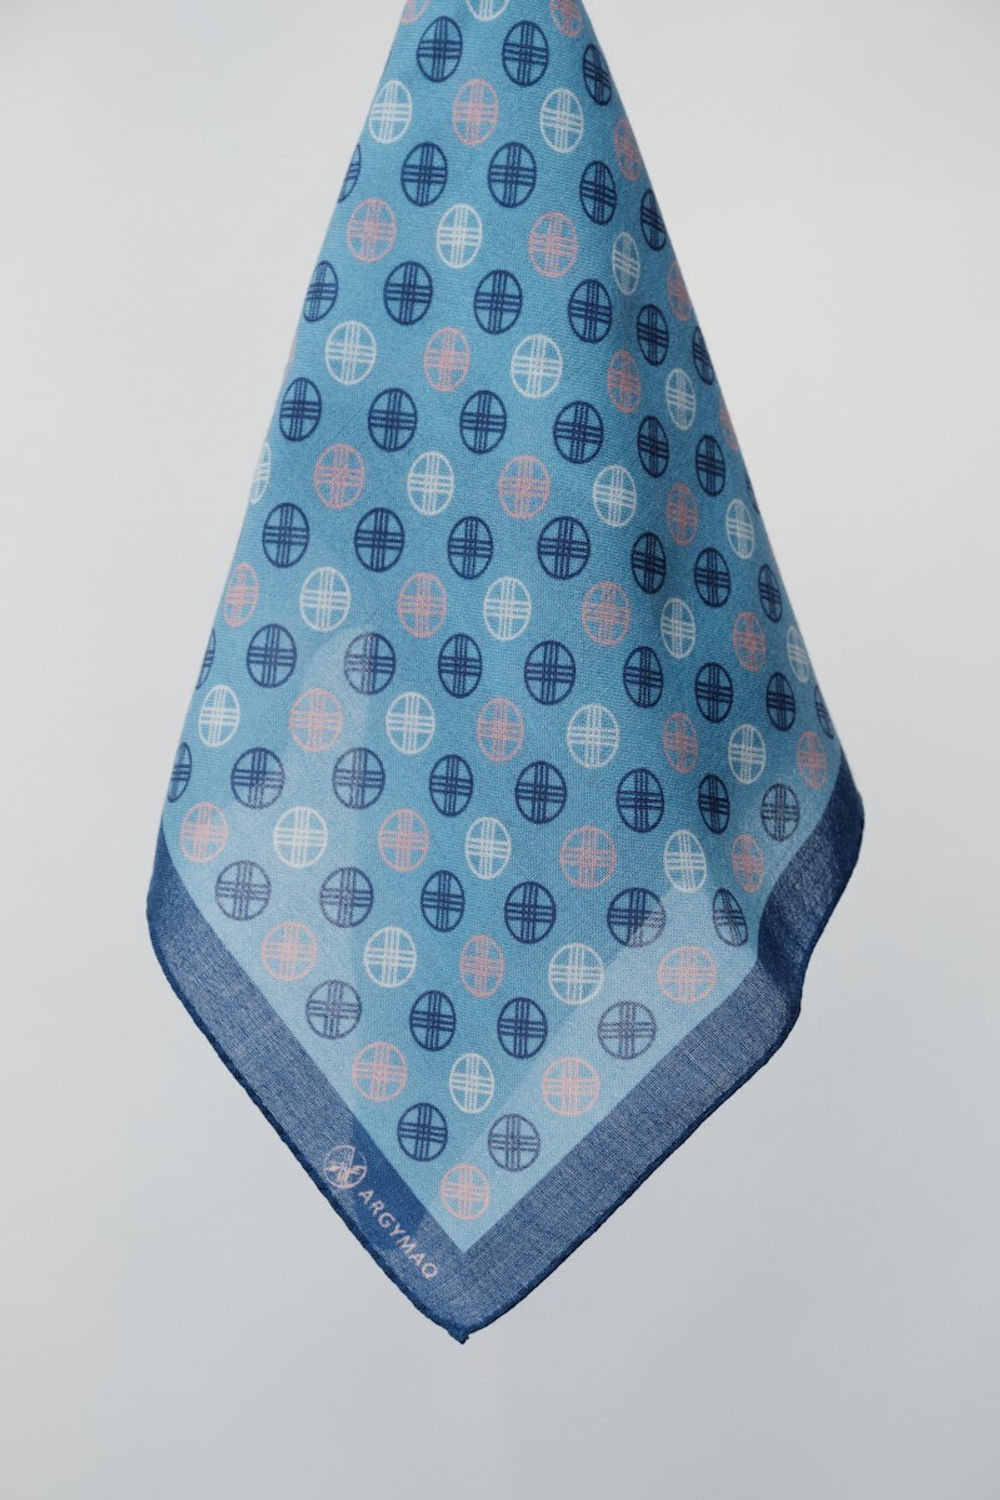 Шерстяной платок SHANYRAQ BLUE 70×70